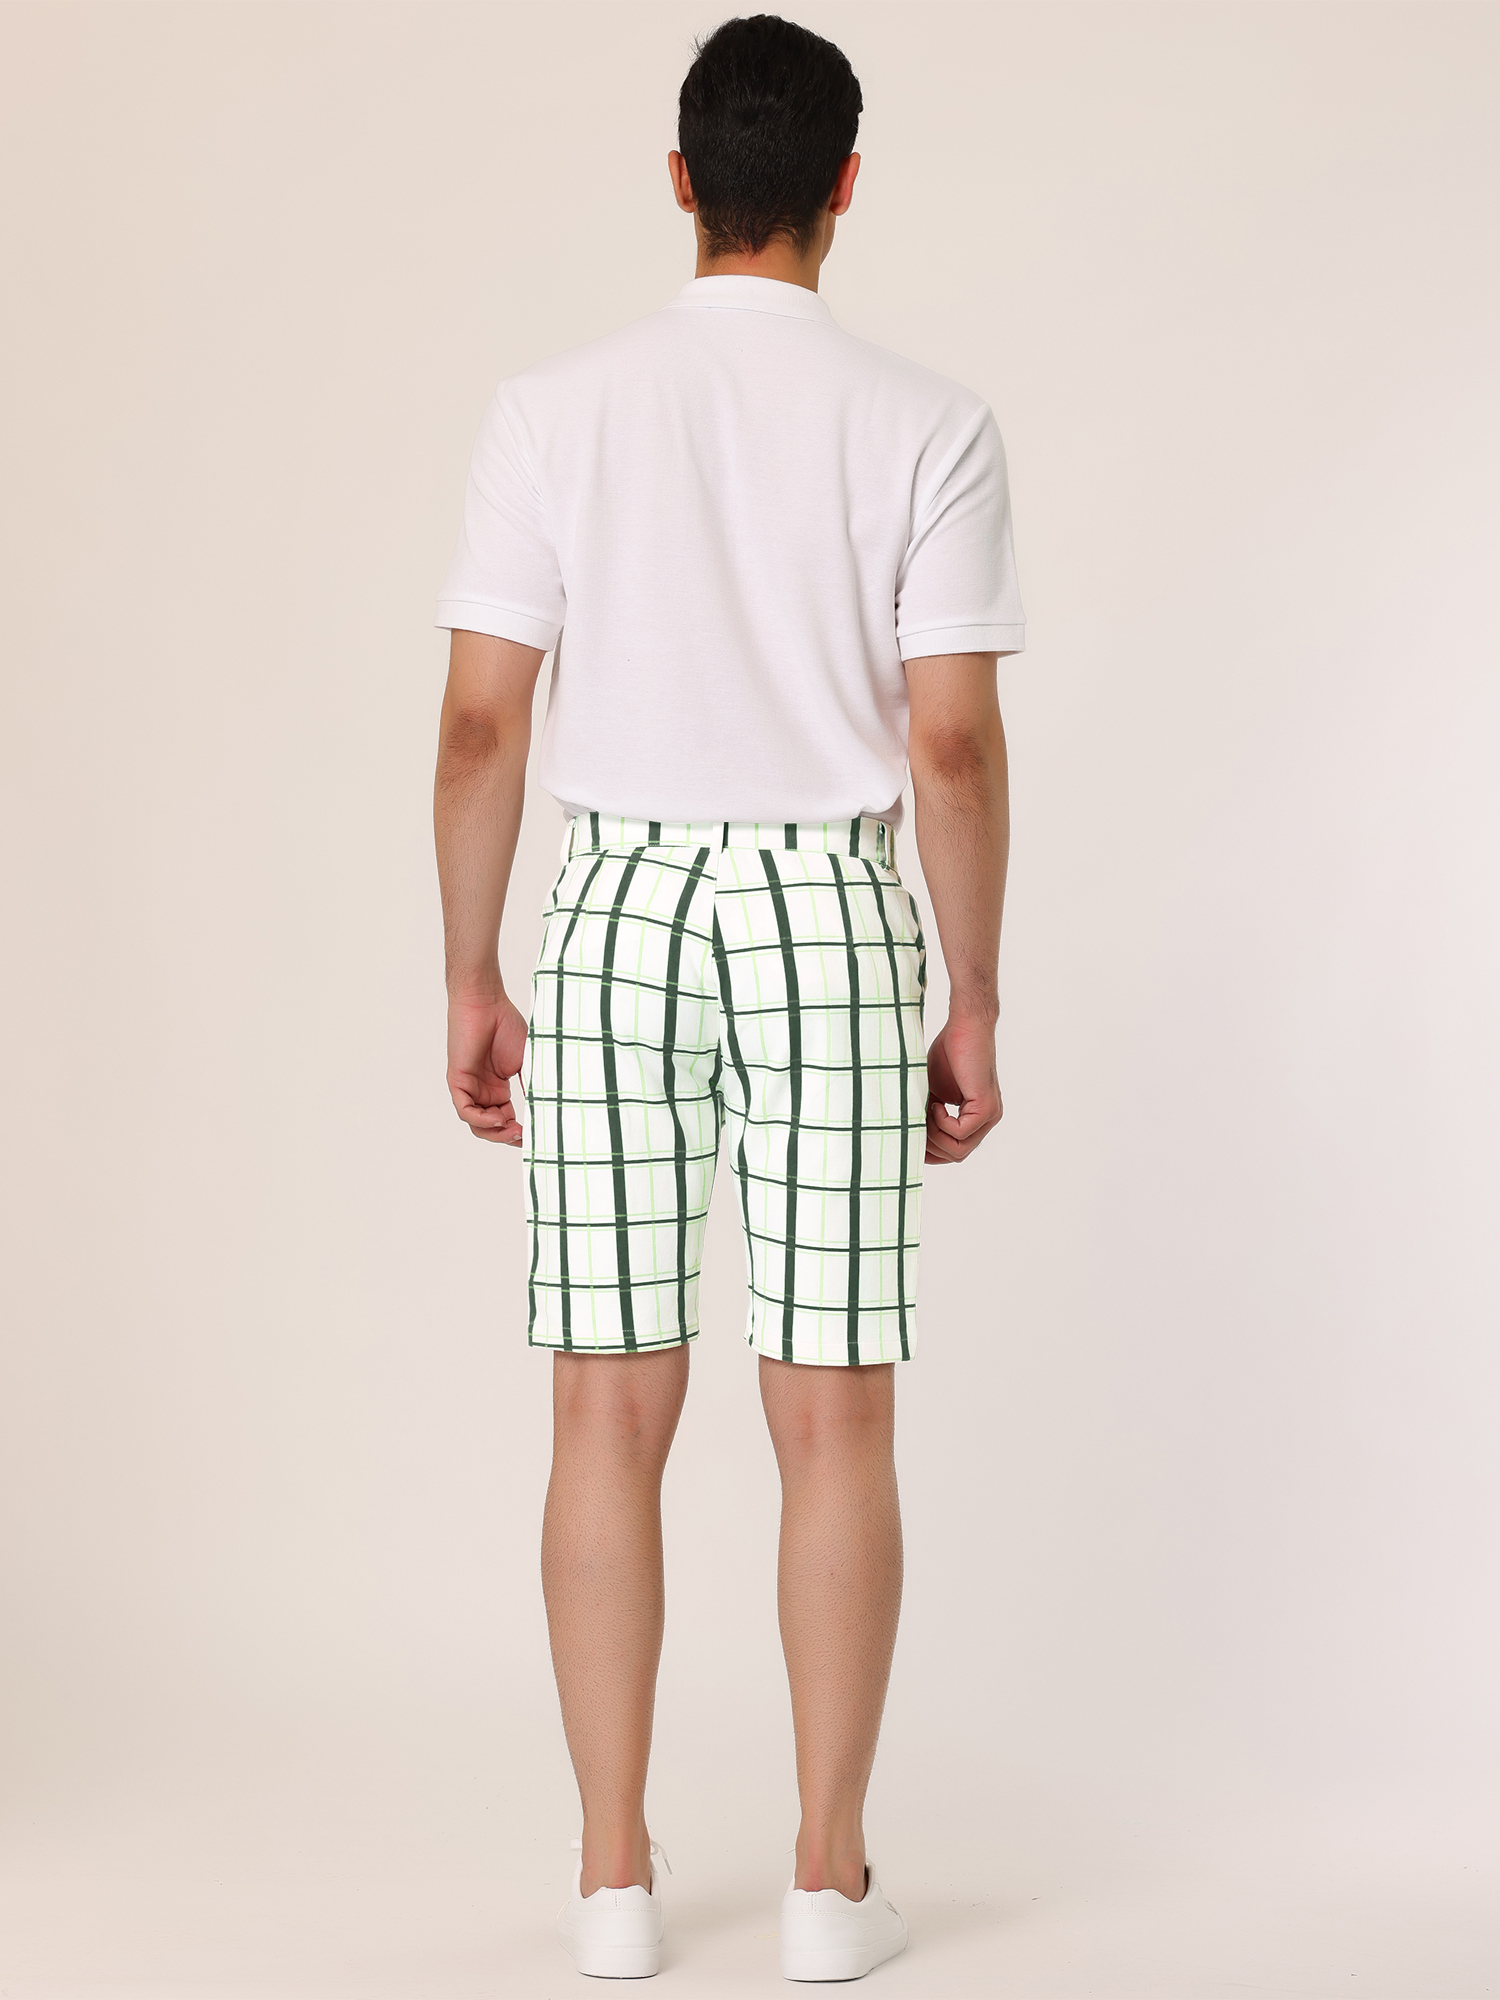 Unique Bargains Lars Amadeus Men's Plaid Shorts Checked Pattern Regular Fit Flat Front Dress Shorts